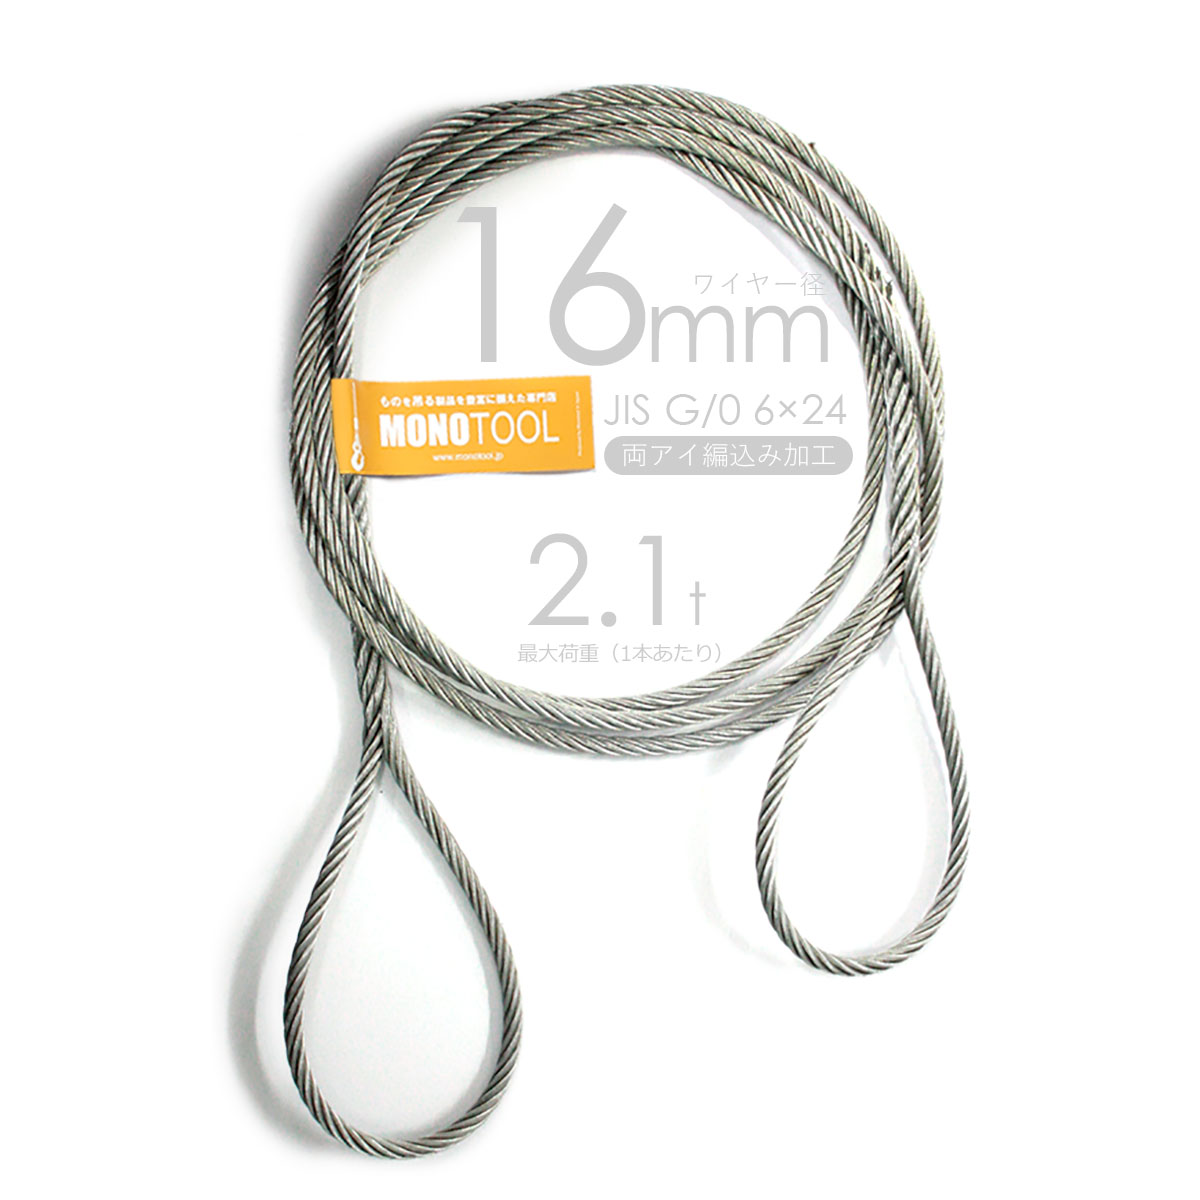 編み込みワイヤー JISメッキ(G O) 9mm（3分）x1m 玉掛けワイヤーロープ 2本組 フレミッシュ 玉掛ワイヤー 通販 